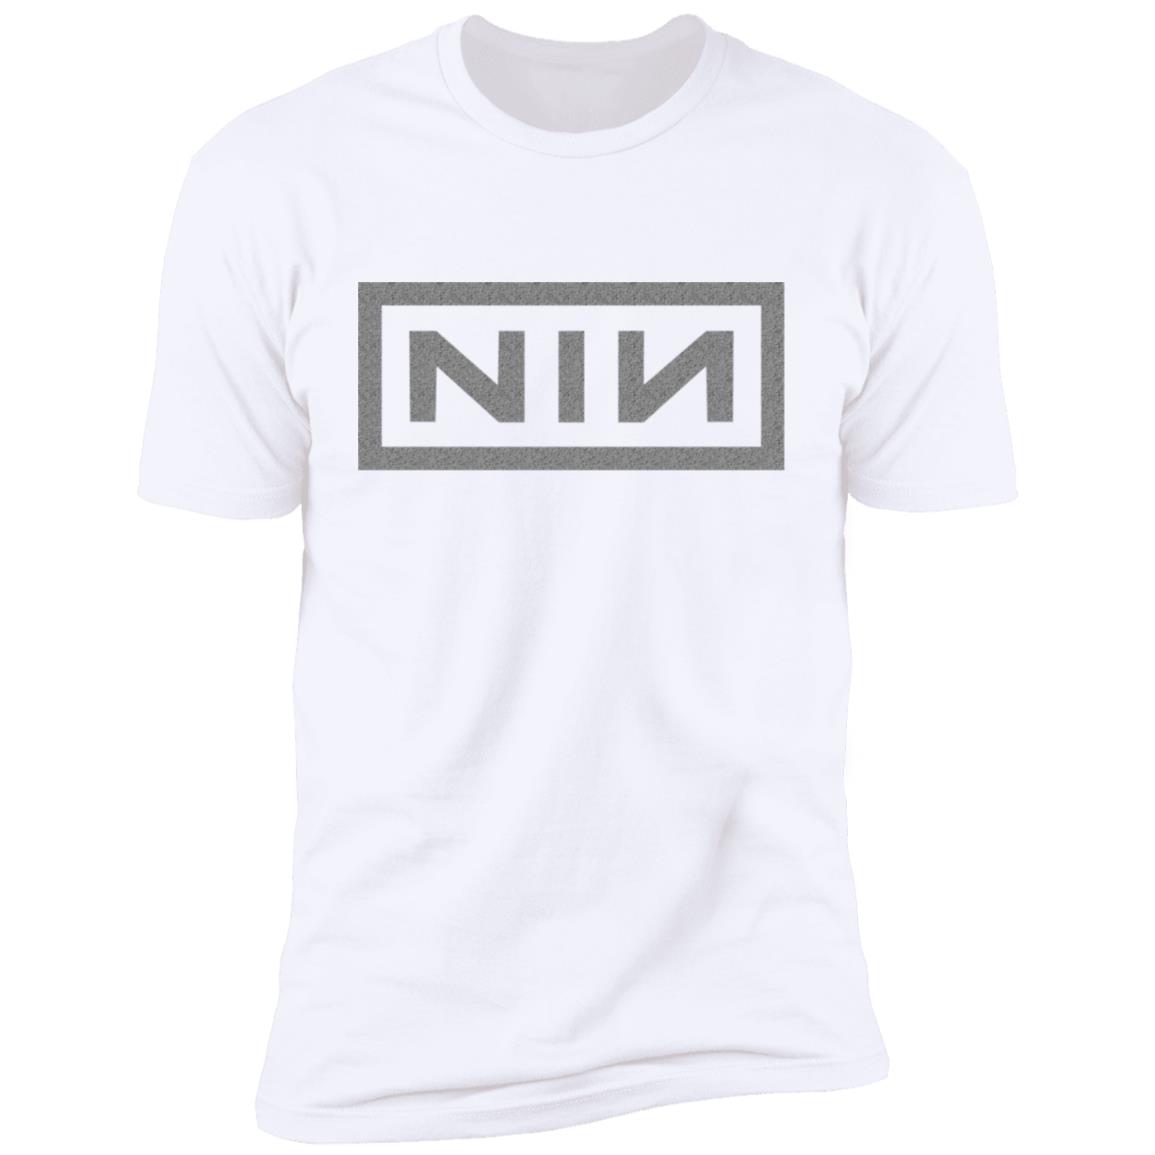 NL3600 Premium Short Sleeve T-Shirt